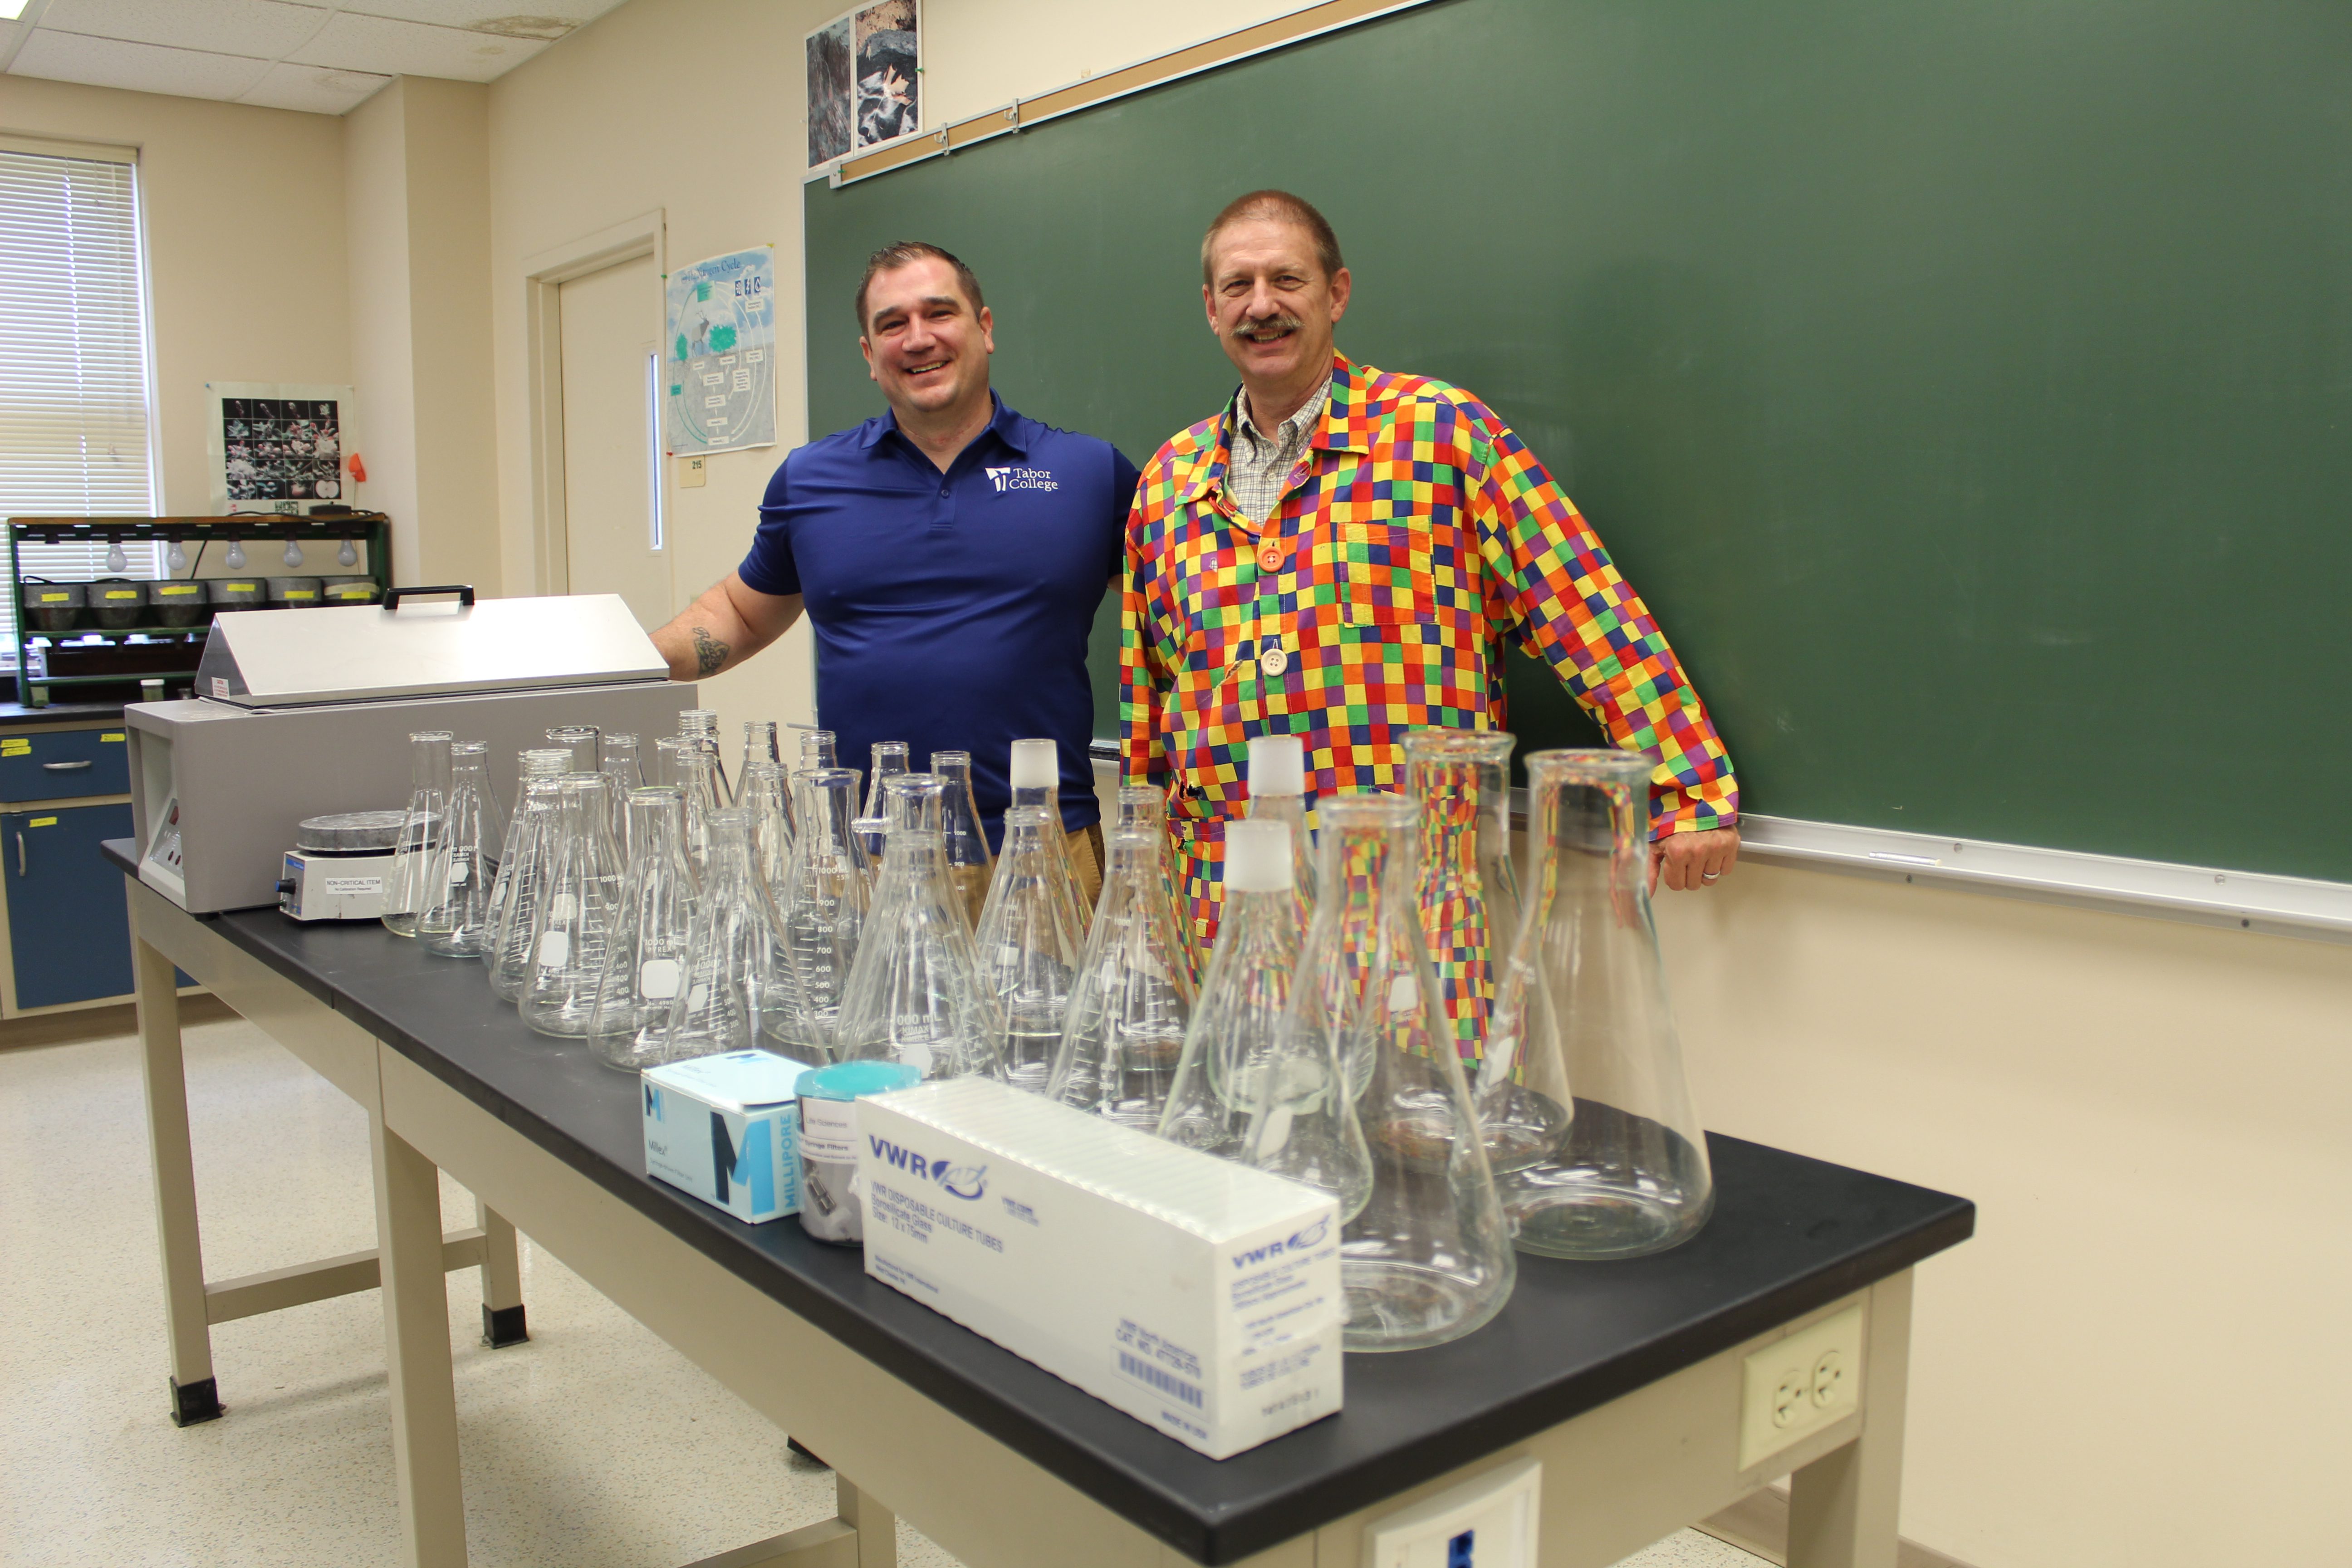 Professors Josh McLoud and Norman Schmidt stand in front of science equipment